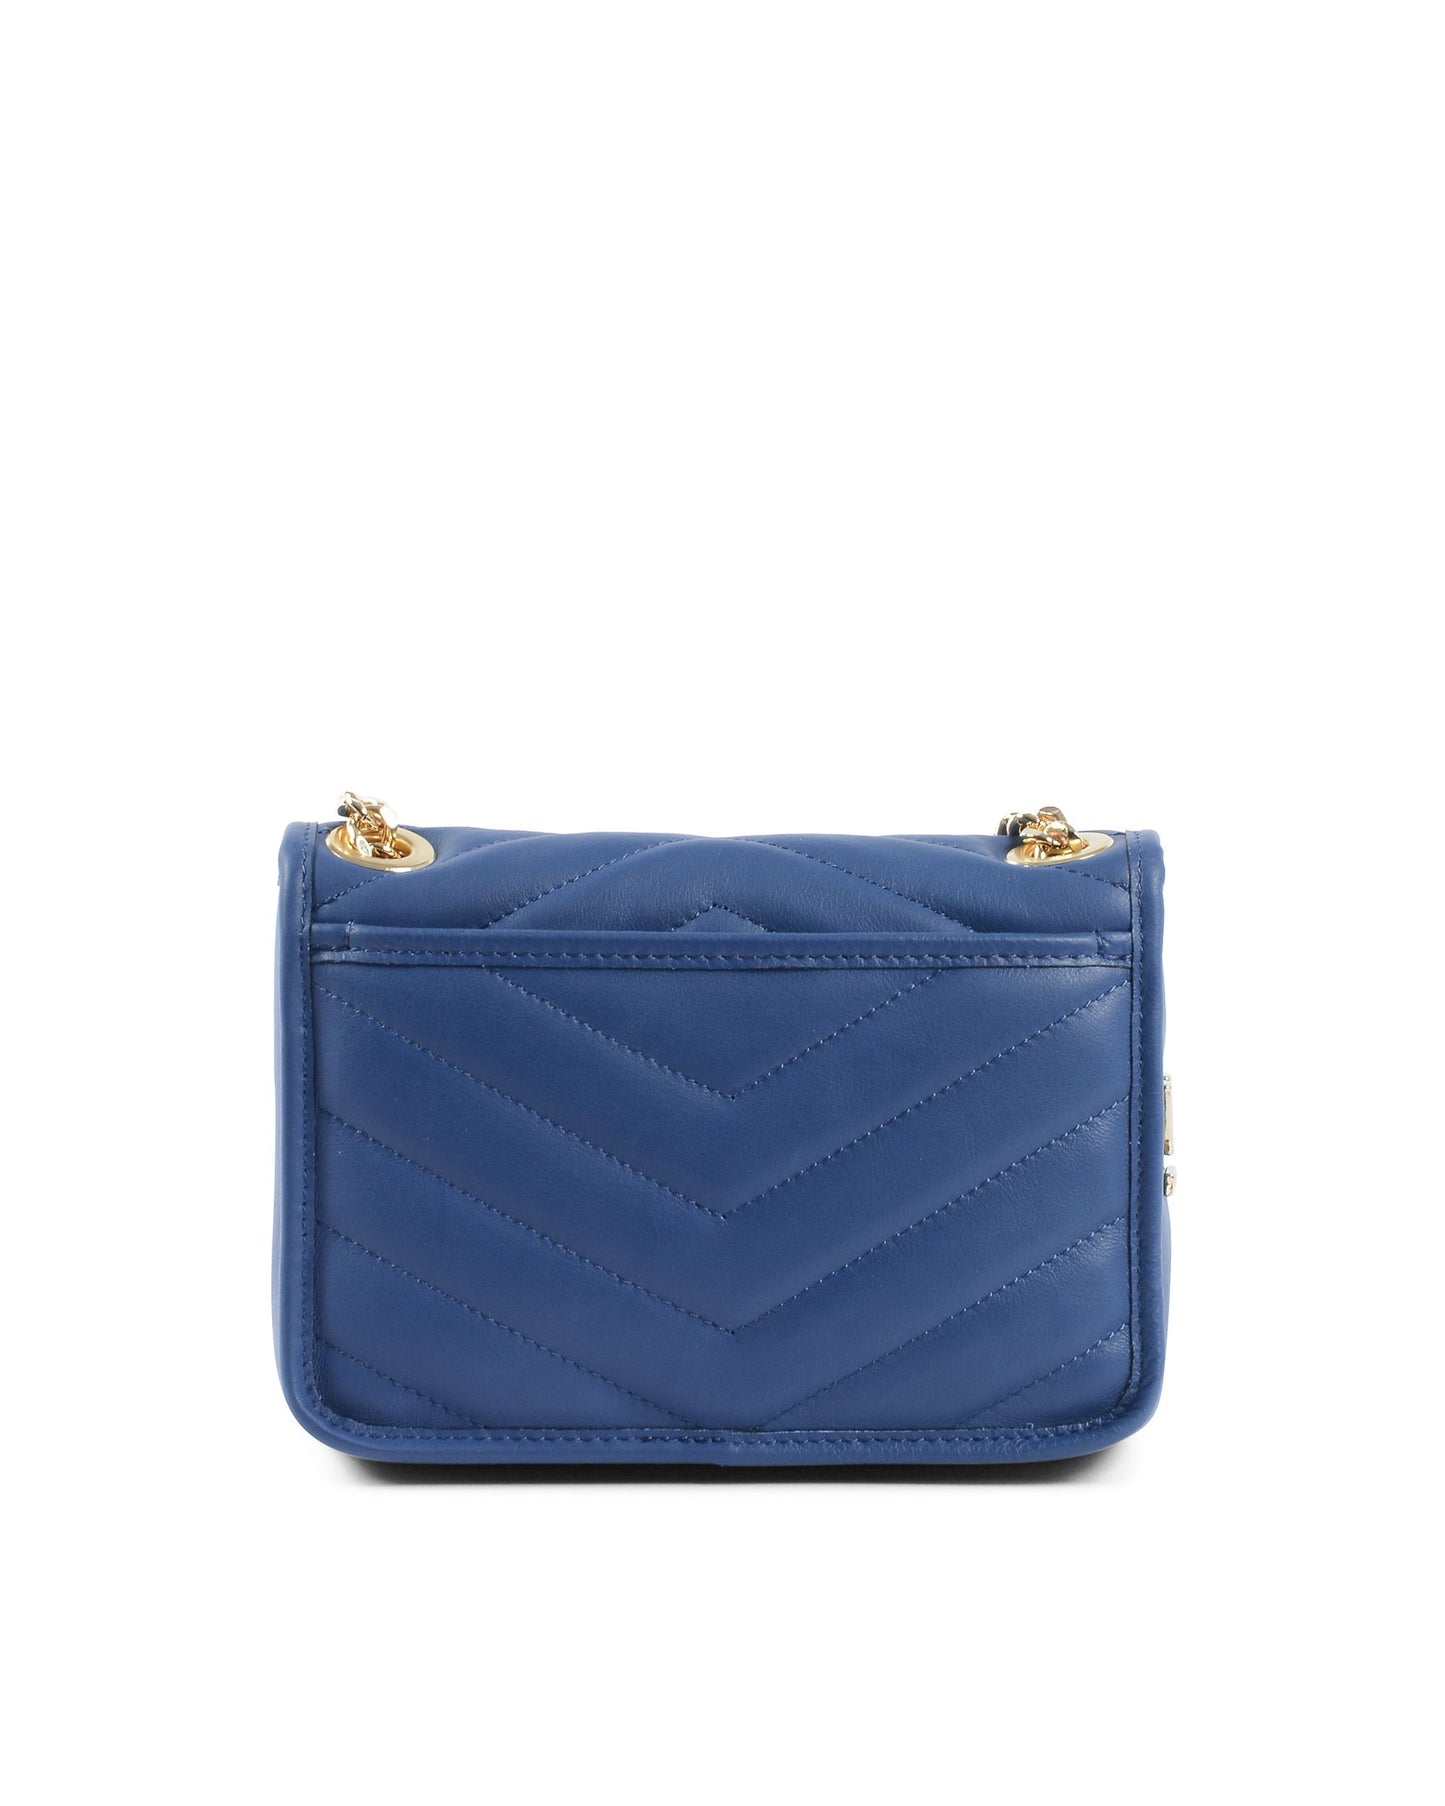 V Italia Womens Handbag Blue 10507 SAUVAGE BLUETTE